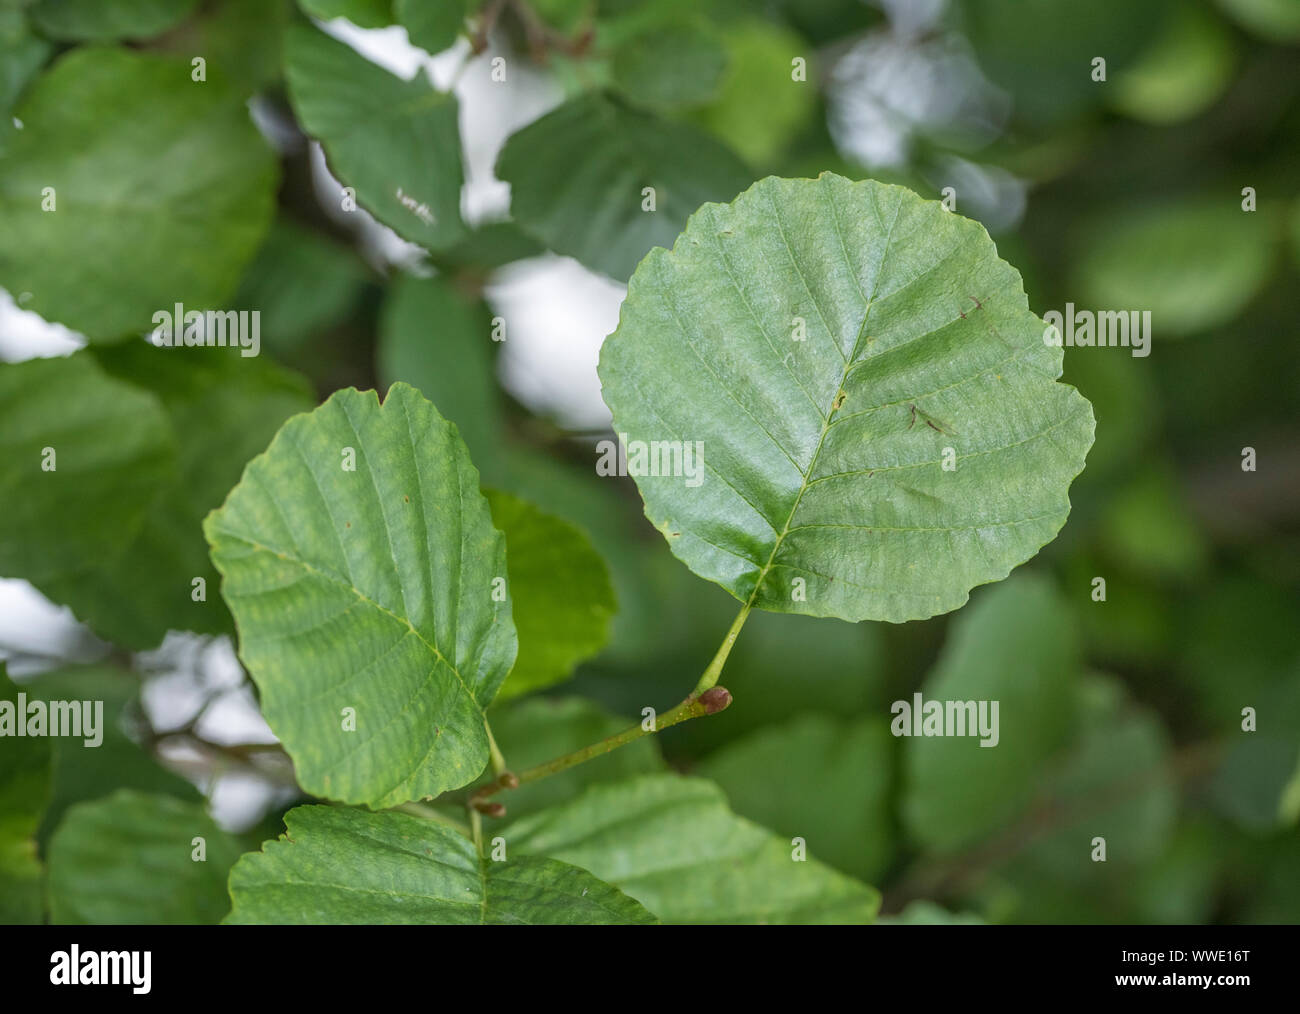 Die jungen grünen Blätter der Gemeinsamen Erle/Alnus glutinosa Bäumchen. Einmal als Heilpflanze in pflanzliche Heilmittel verwendet. Stockfoto